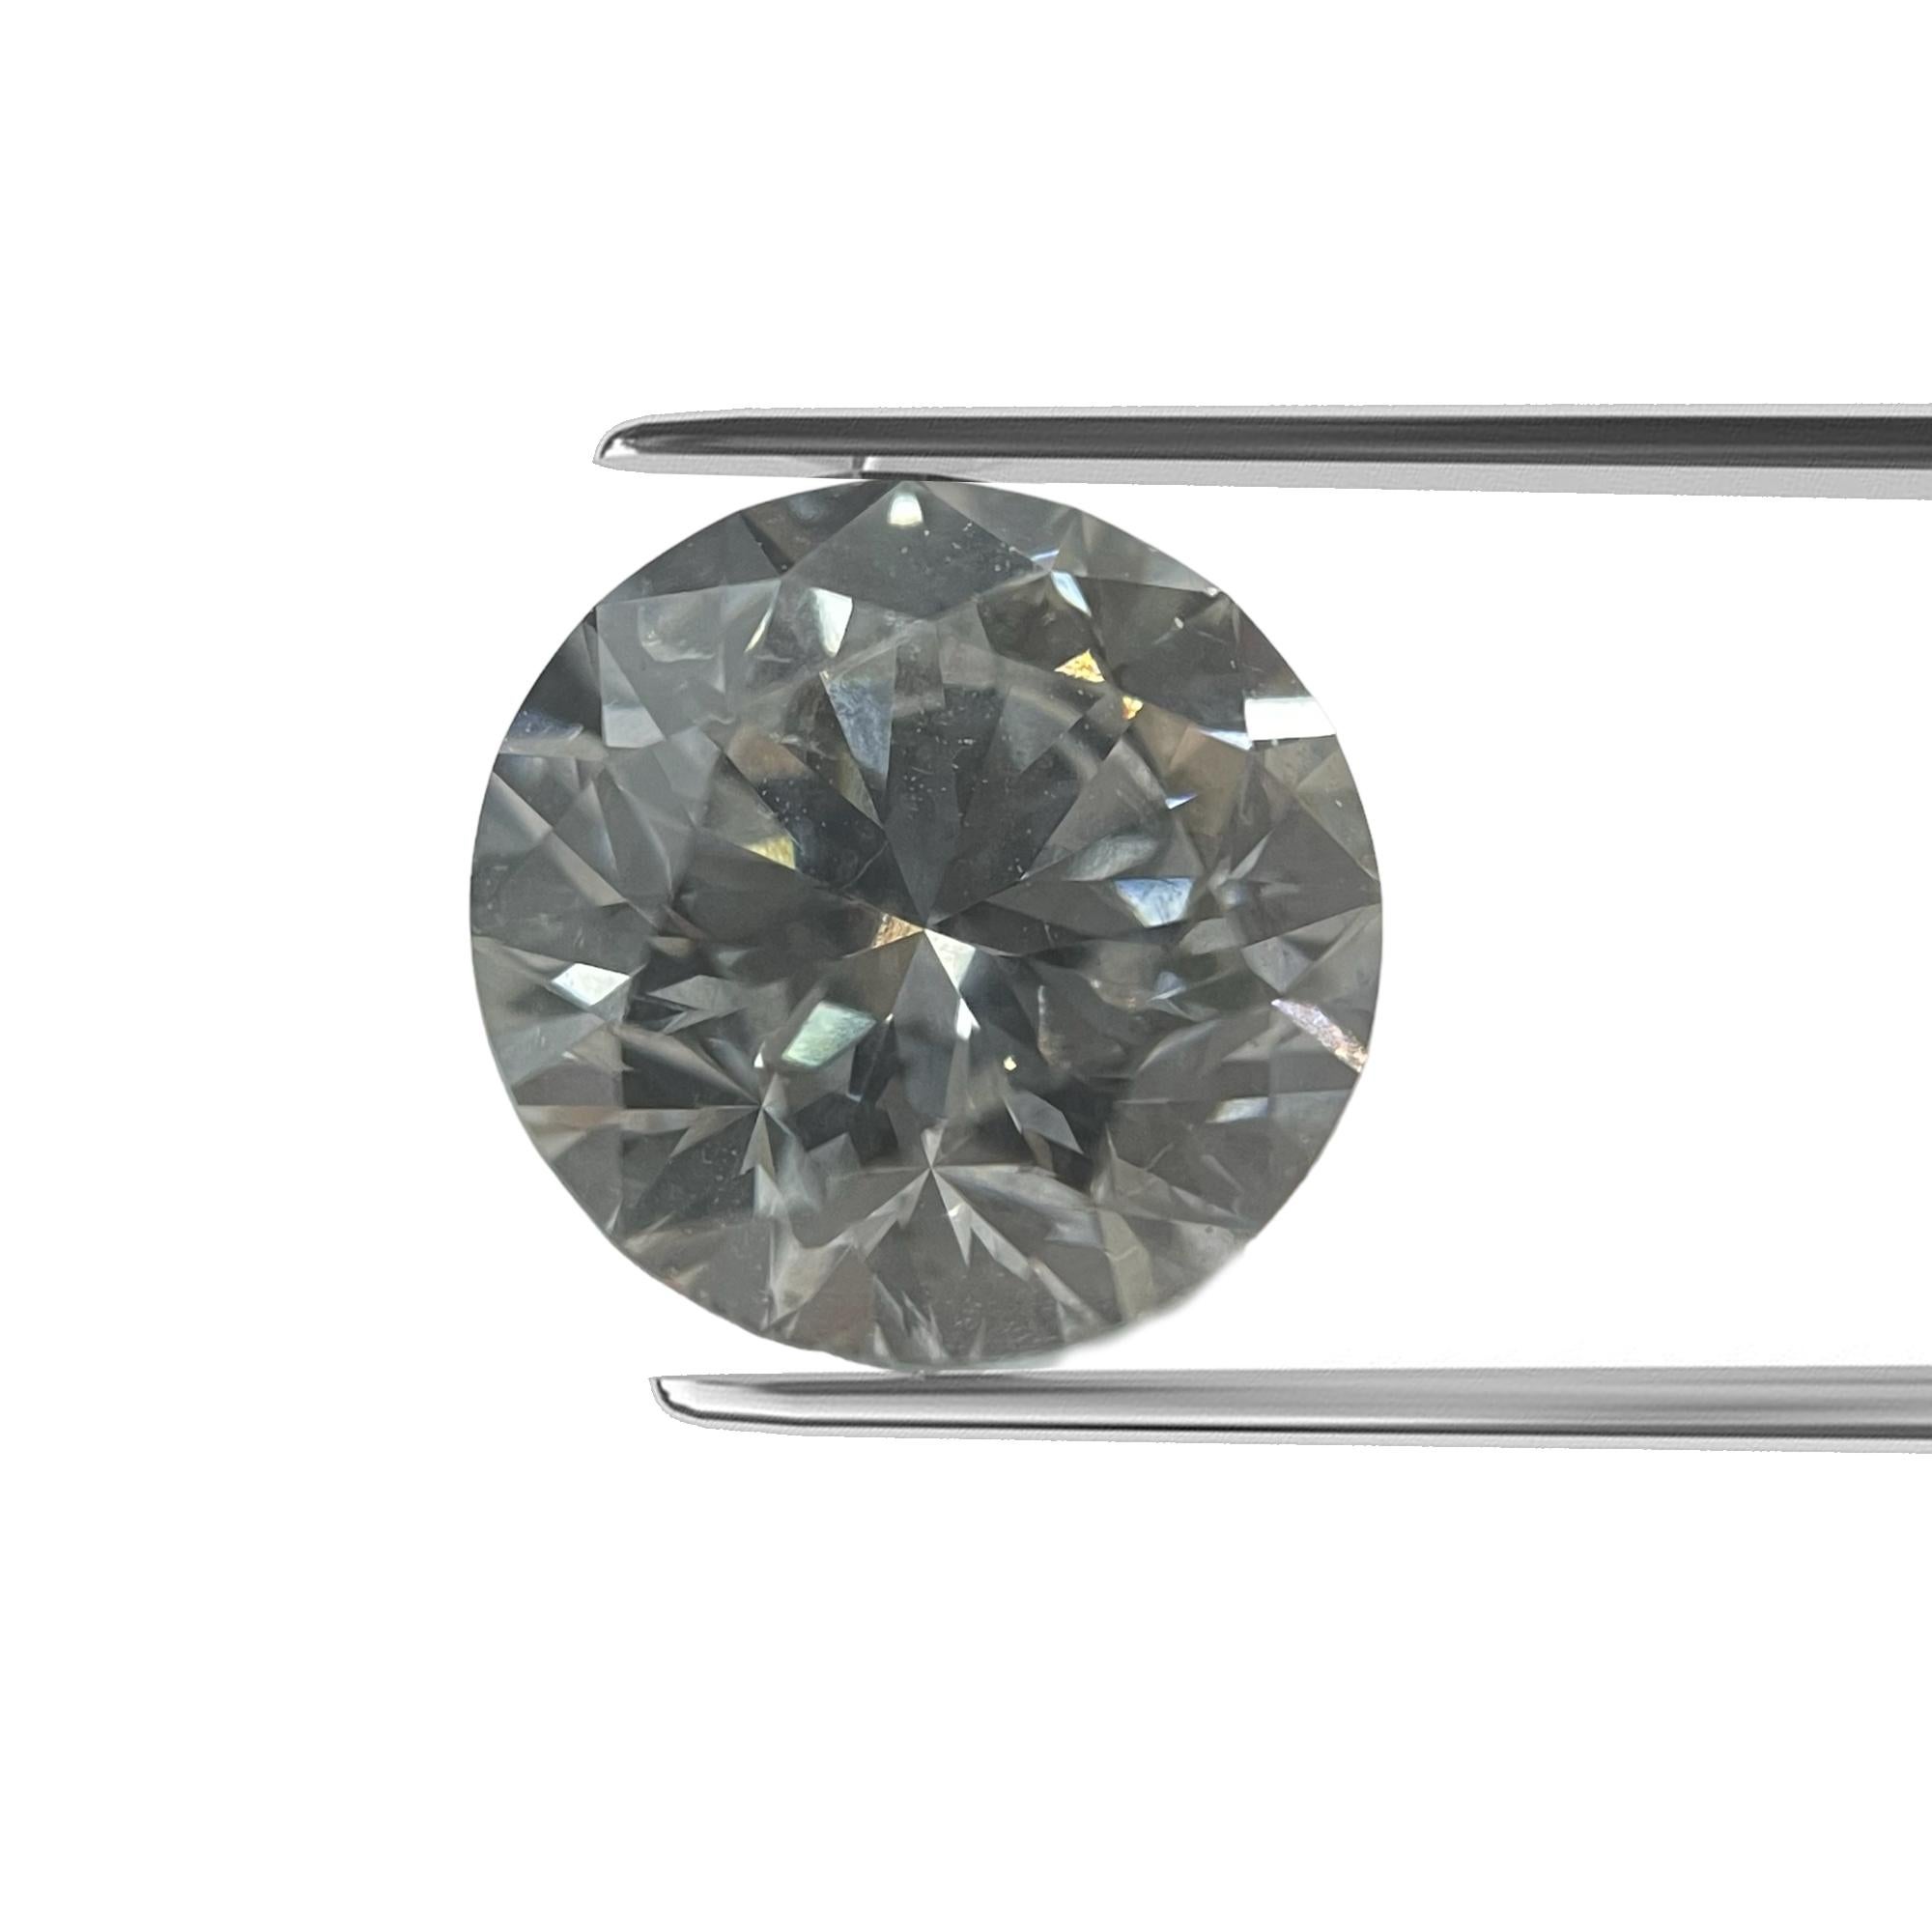 ITEM DESCRIPTION

ID #: NYC56552
Stone Shape:	ROUND BRILLIANT
Diamond Weight: 1.53 CT
Color: FAINT GRAY
Cut:	Excellent
Measurements: 7.16 X 7.22 X 4.63 mm
Depth %:	64.35%
Table %:	56.00%
Symmetry: Excellent
Polish: Excellent
Fluorescence: Strong